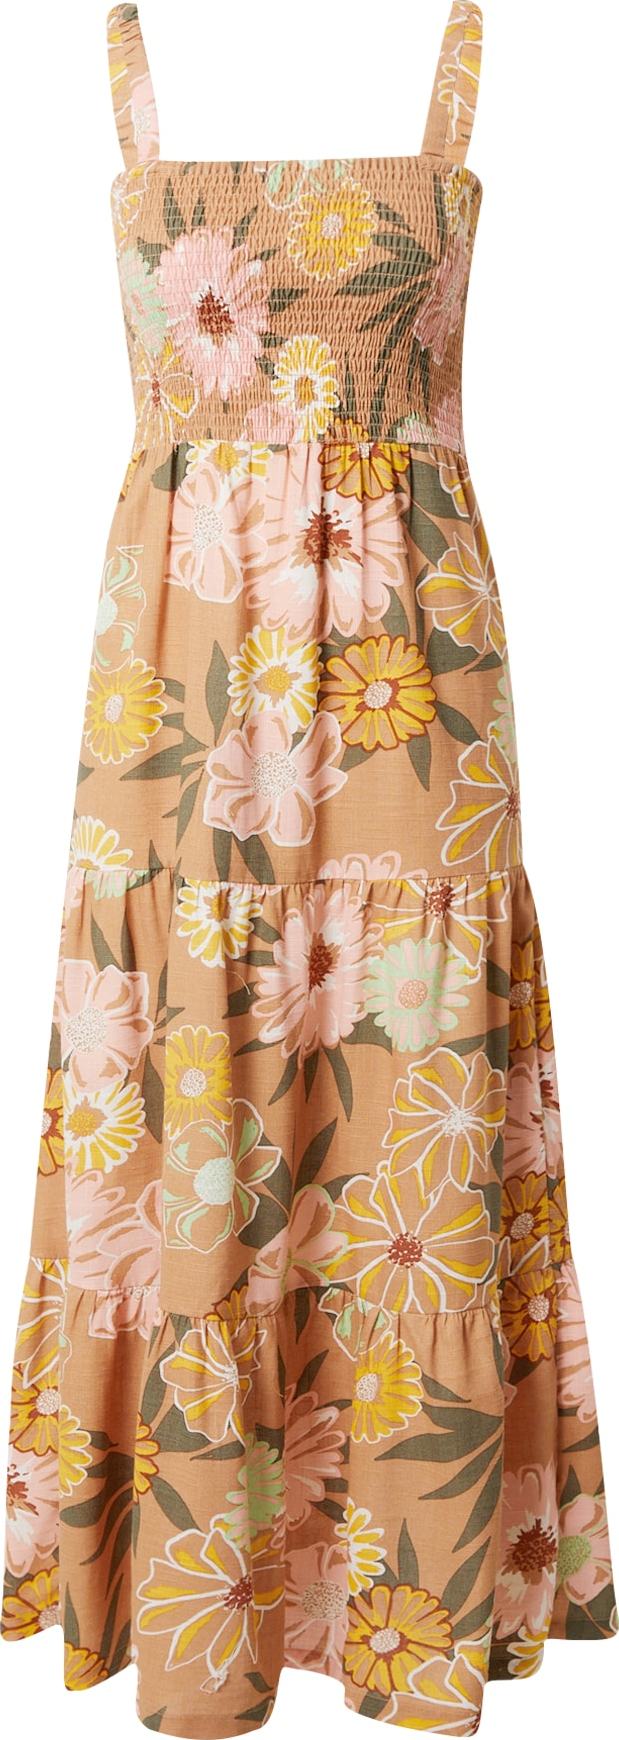 ROXY Letní šaty 'SUNNIER SHORES' světle hnědá / kari / olivová / růže